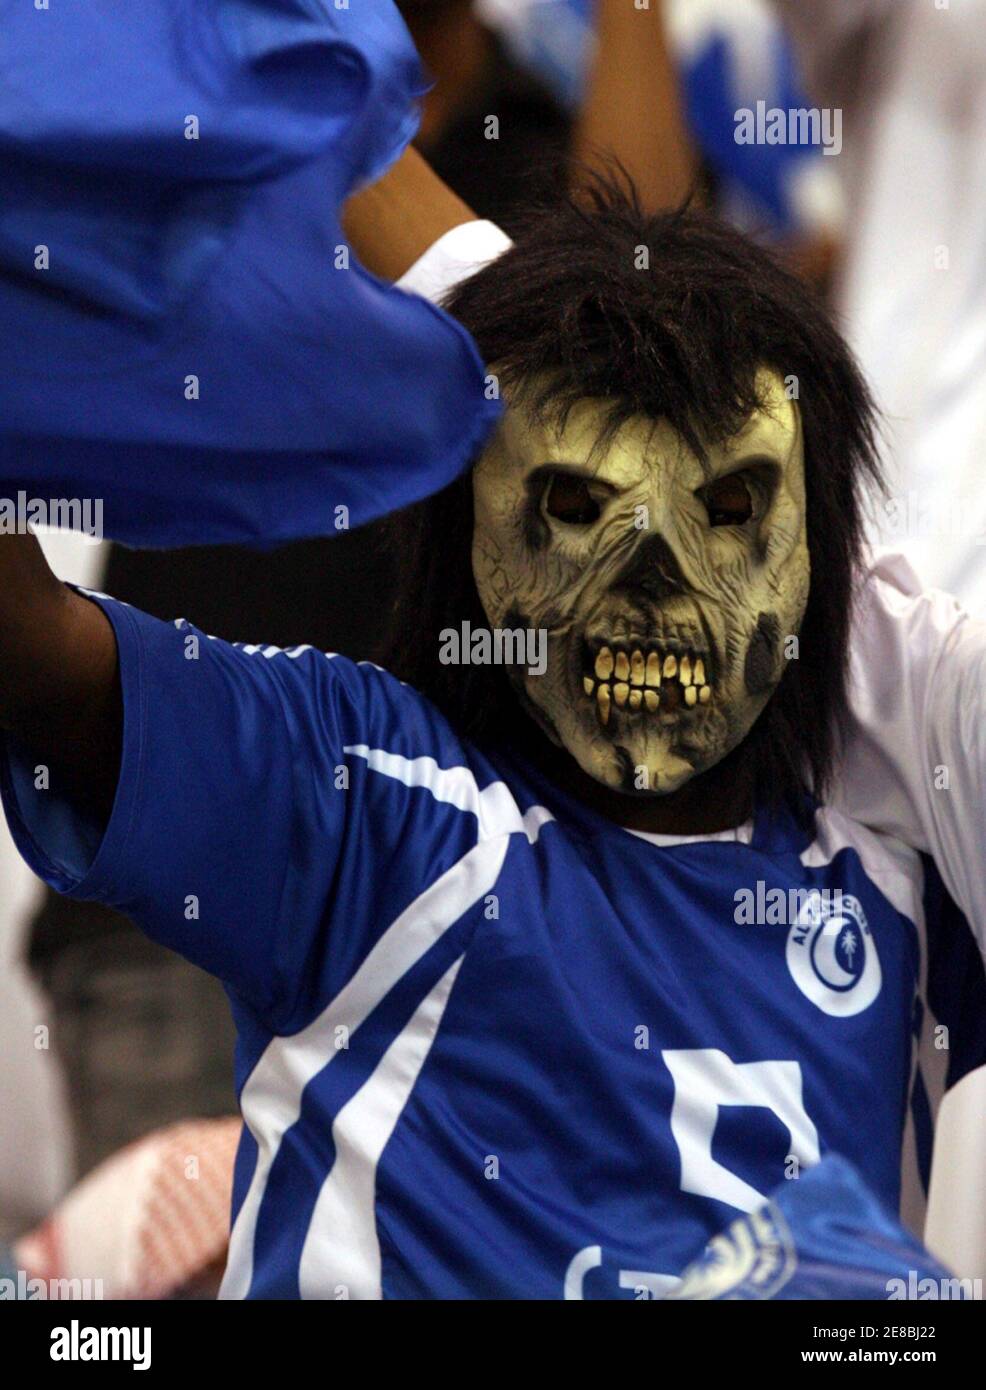 Un fan di al-Hilal si acclama la sua squadra durante la loro partita contro al-Nasr nella partita di calcio finale della Coppa Saudi Faisal Bin Fahad a Riyadh il 2 aprile 2008. REUTERS/Fahad Shadeed (ARABIA SAUDITA) Foto Stock